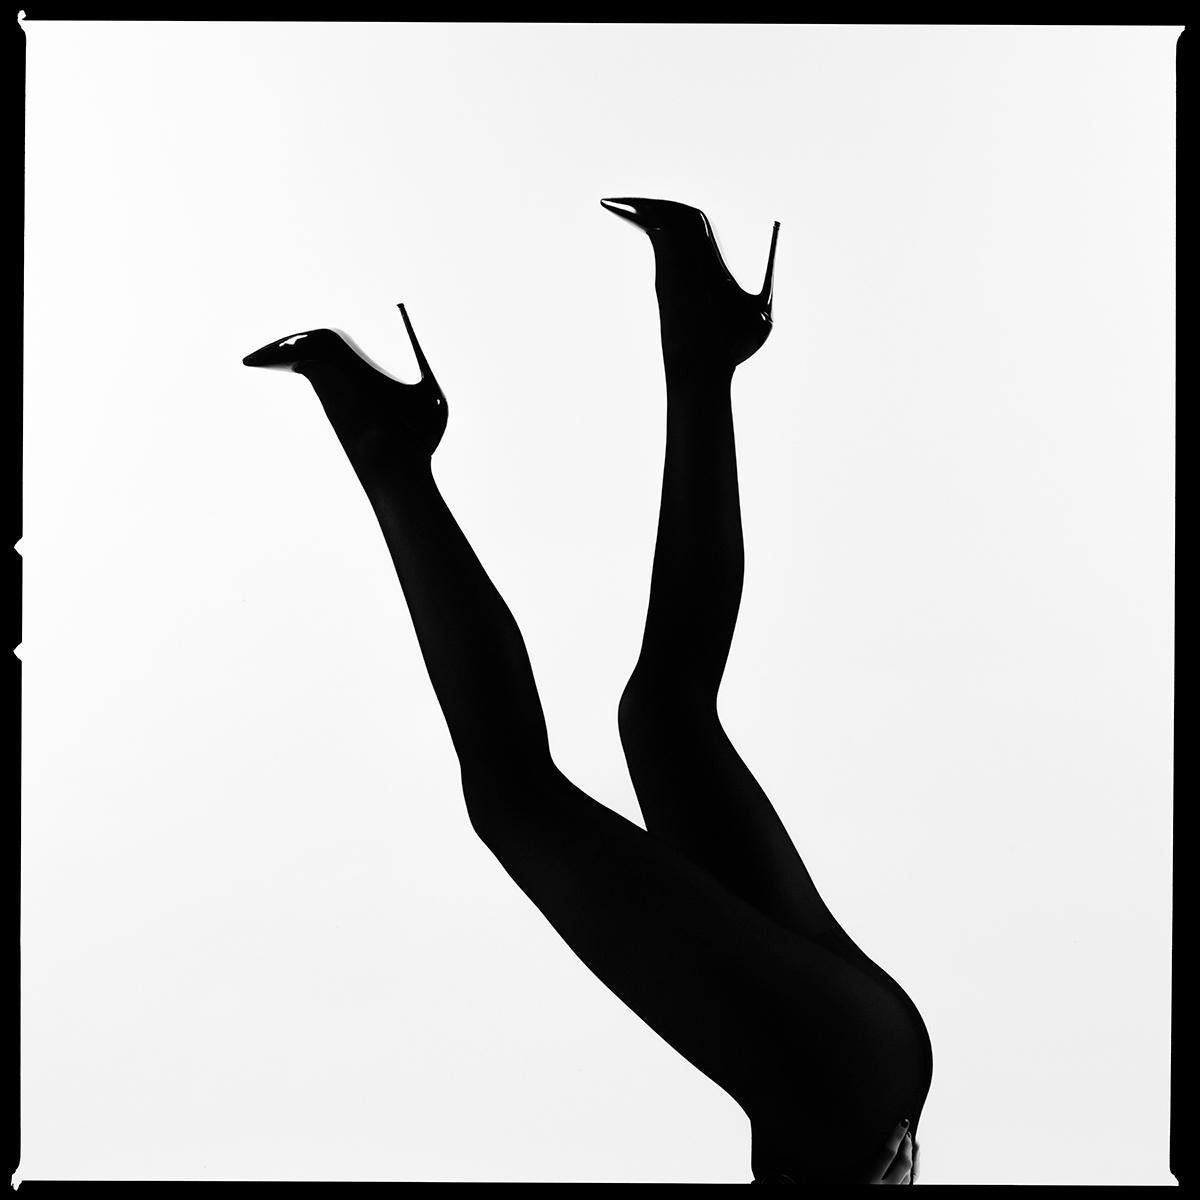 Tyler Shields - Legs Up Silhouette, Fotografie 2020